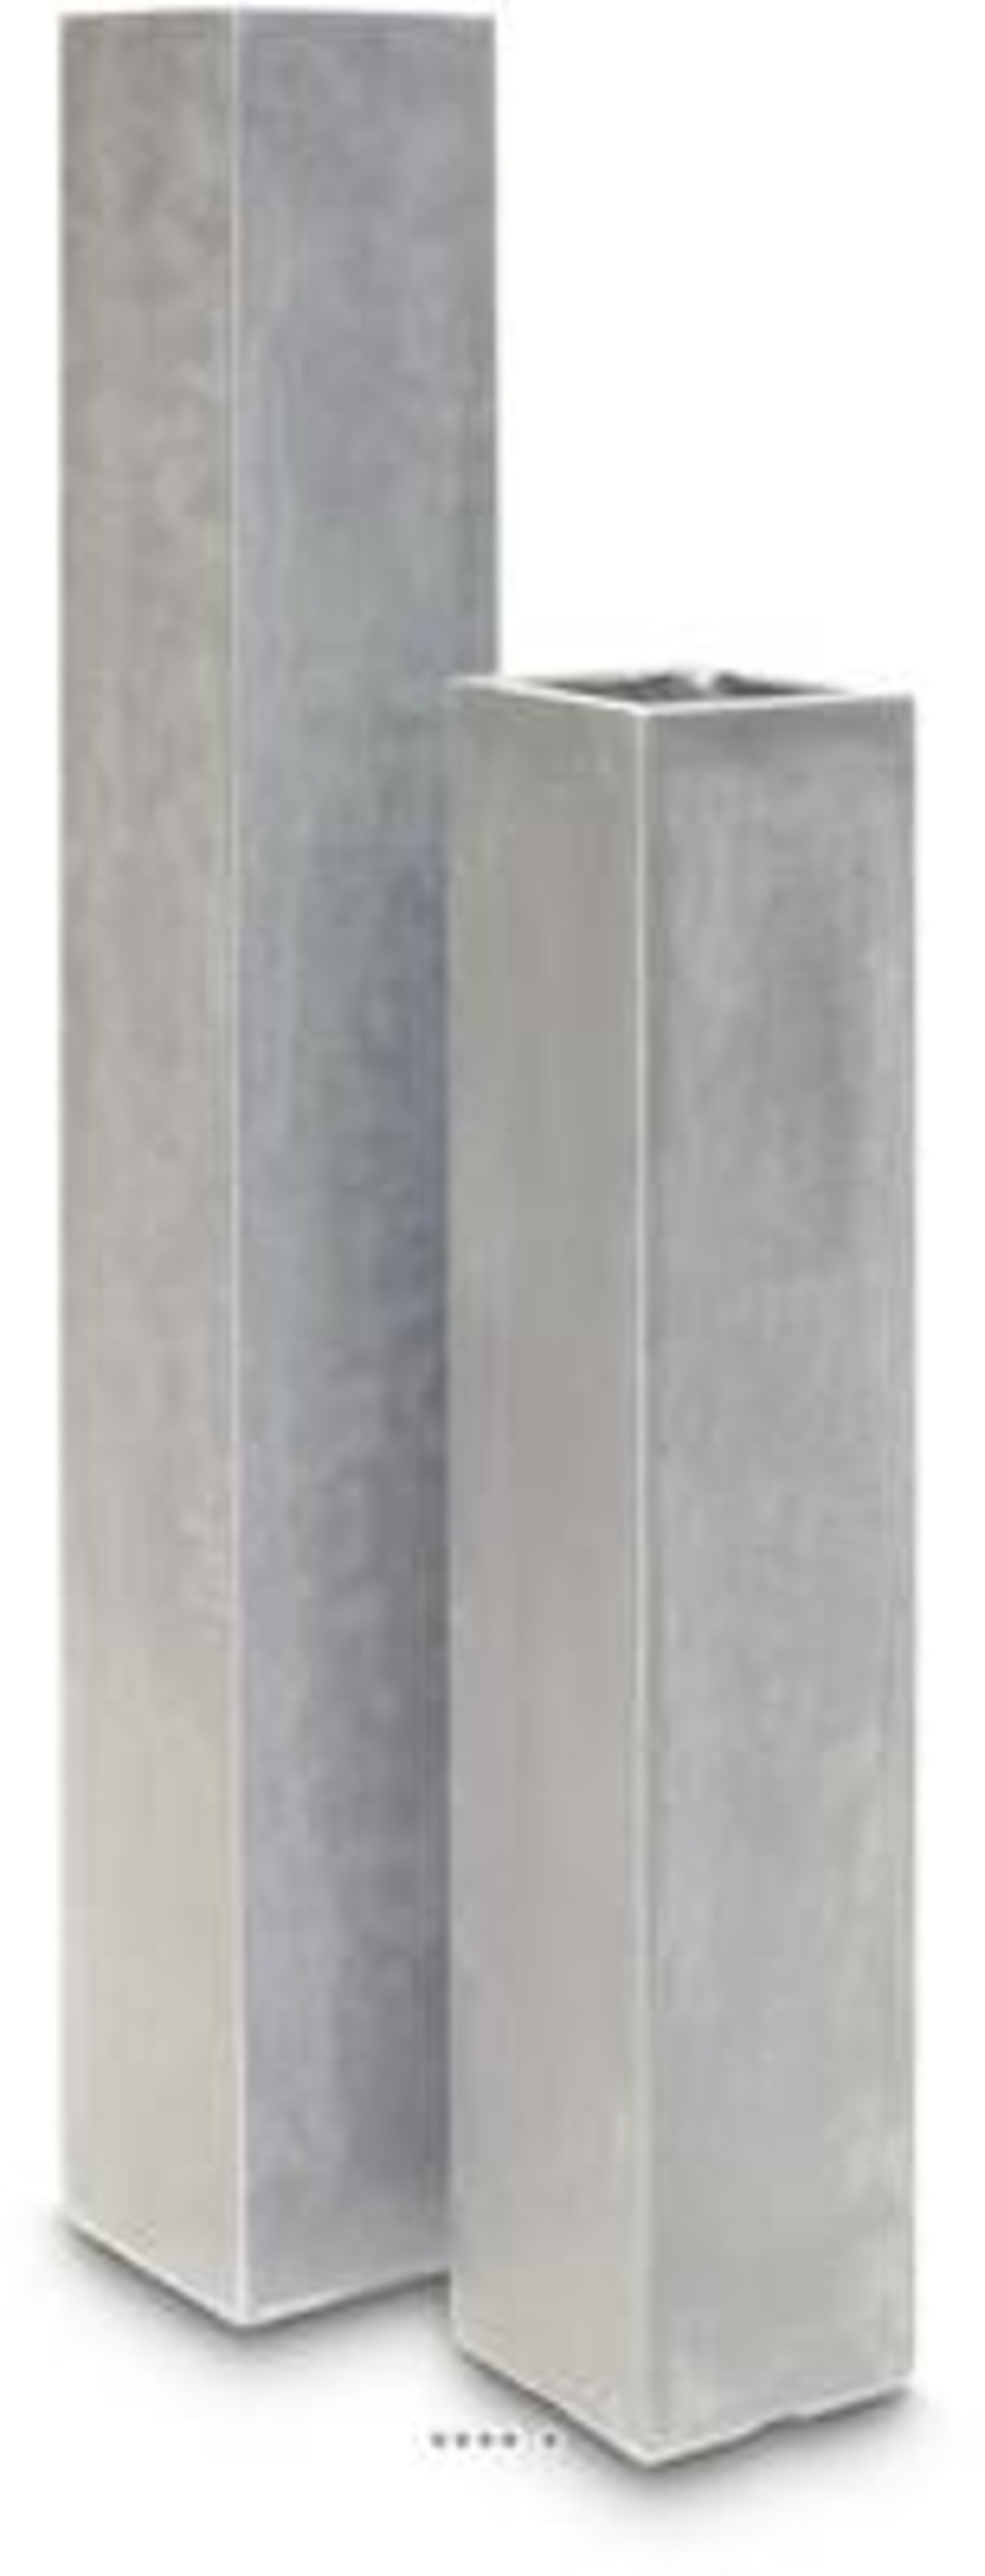 Bac fibres de verre et composite 23 x 23 cm h 160 cm ext. Carré colonne gris cla